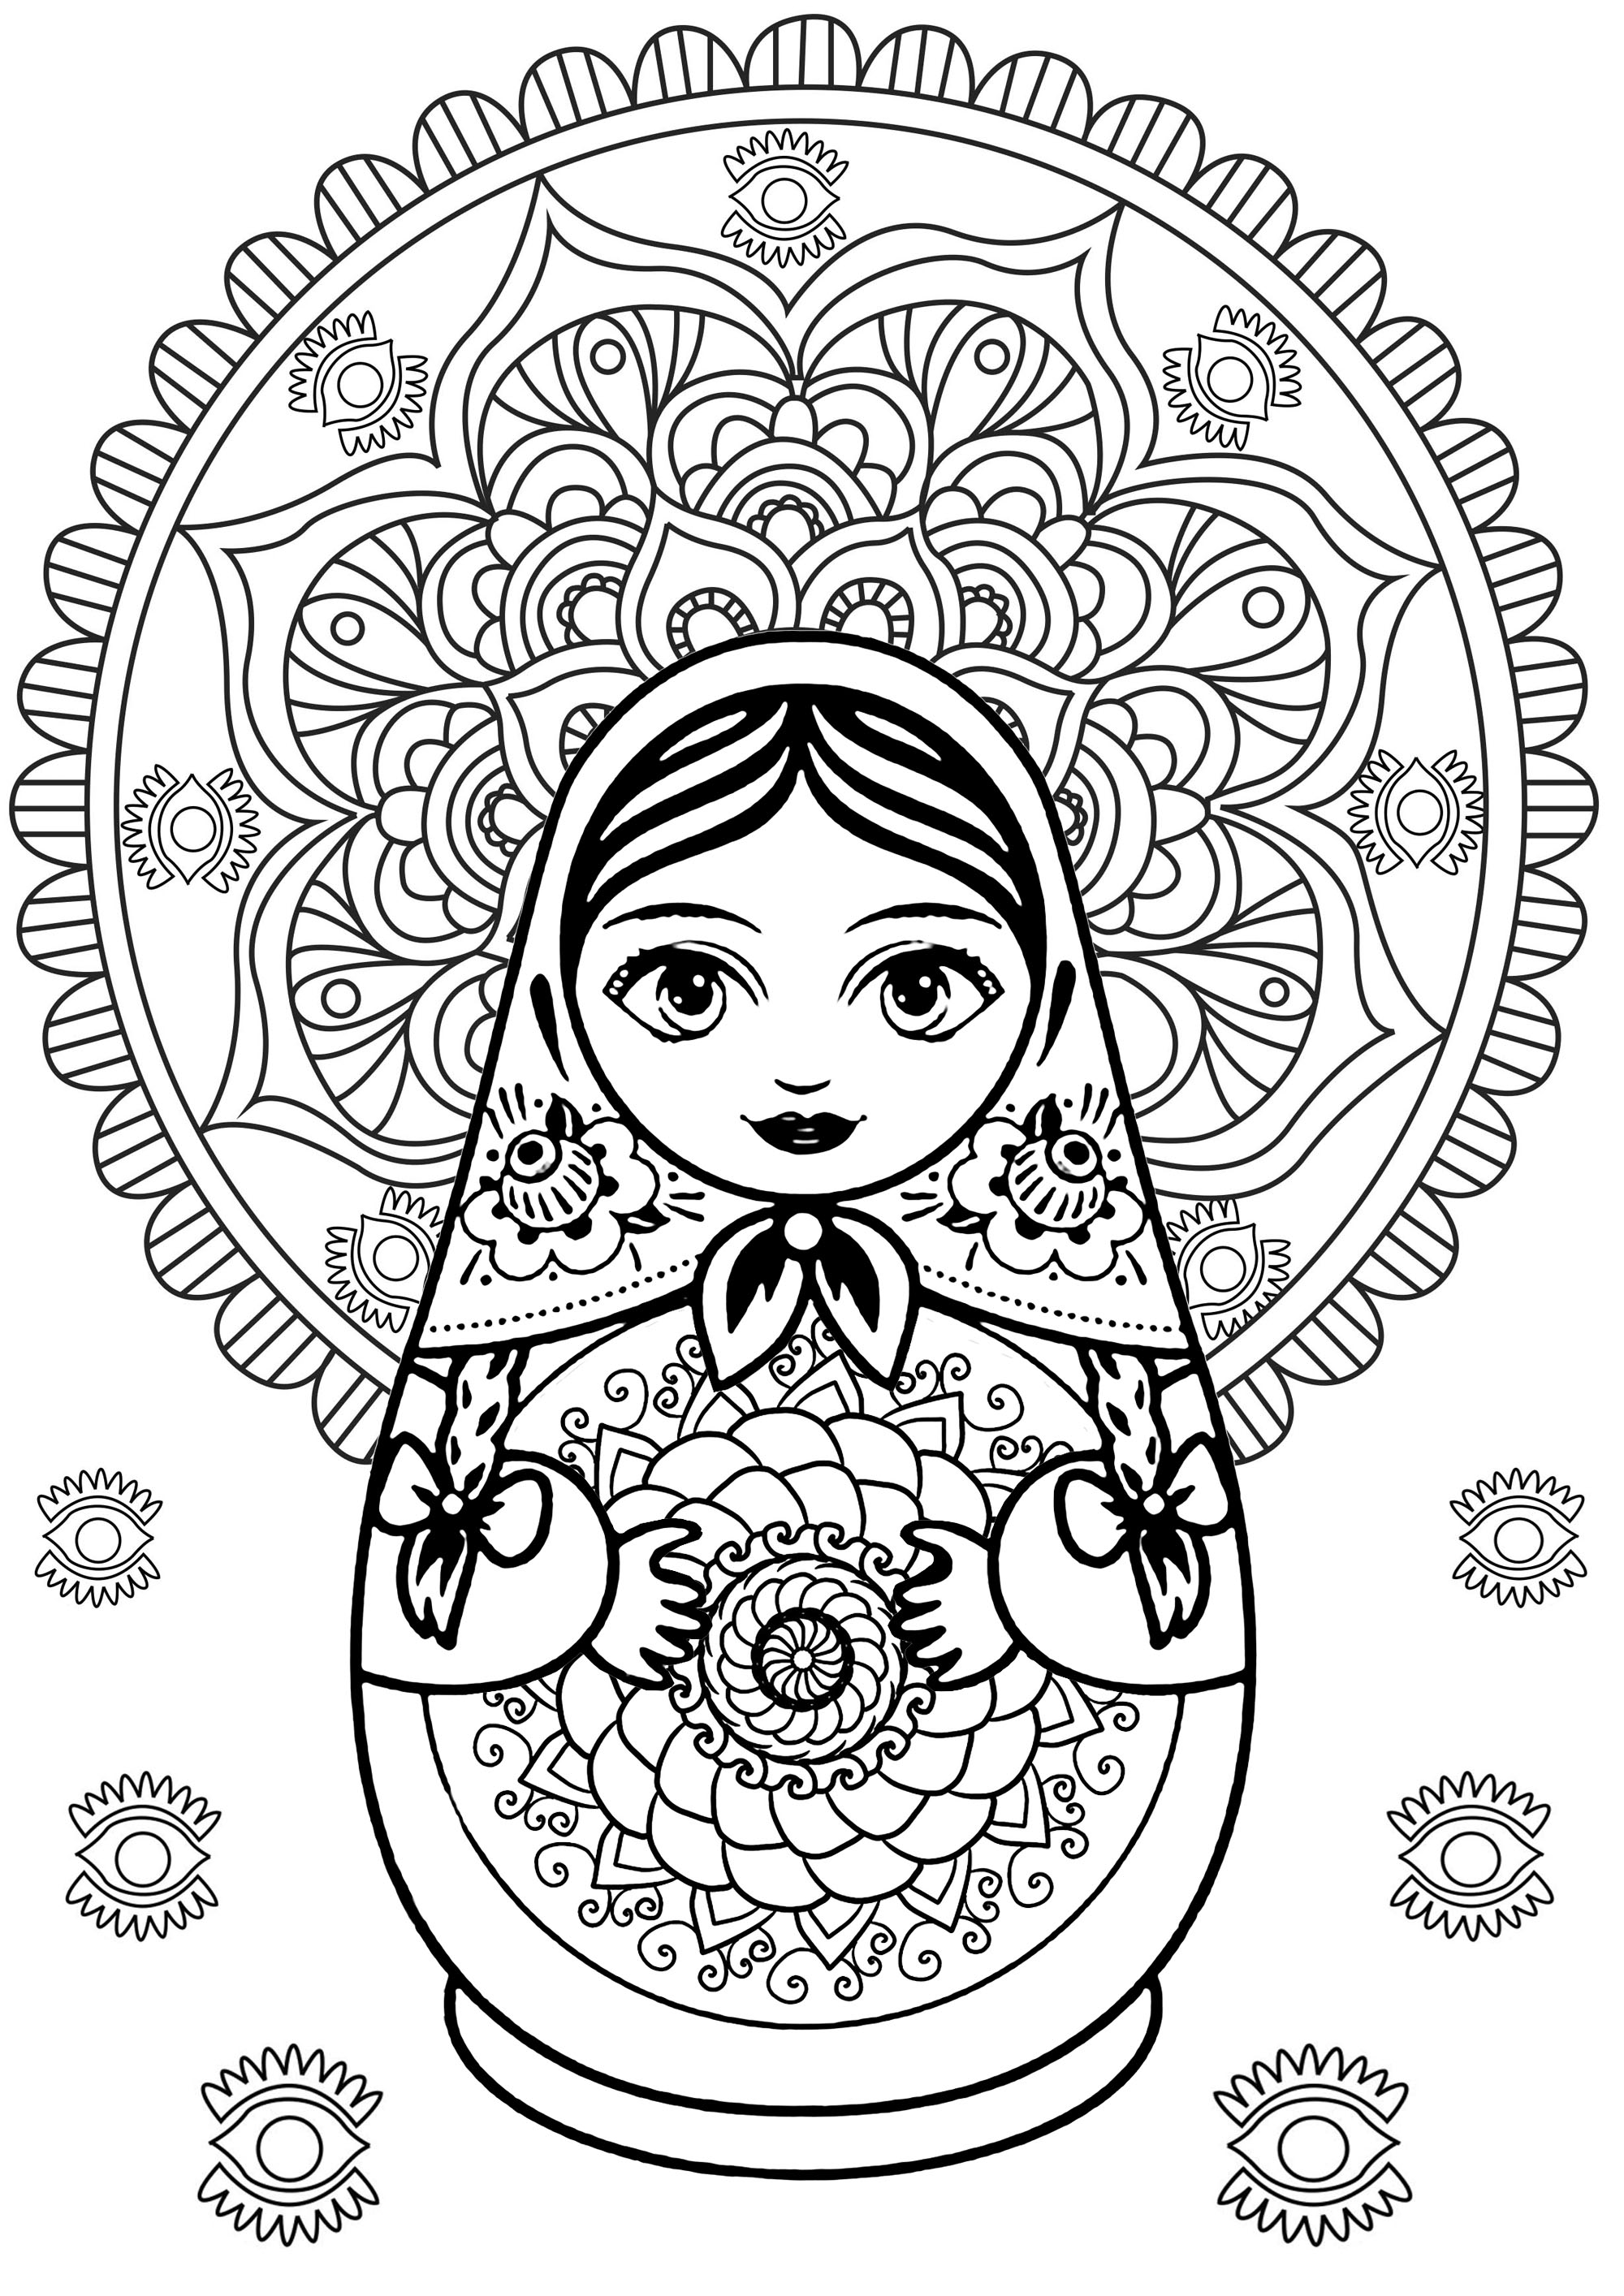 Mandala y muñeca rusa con elementos originales